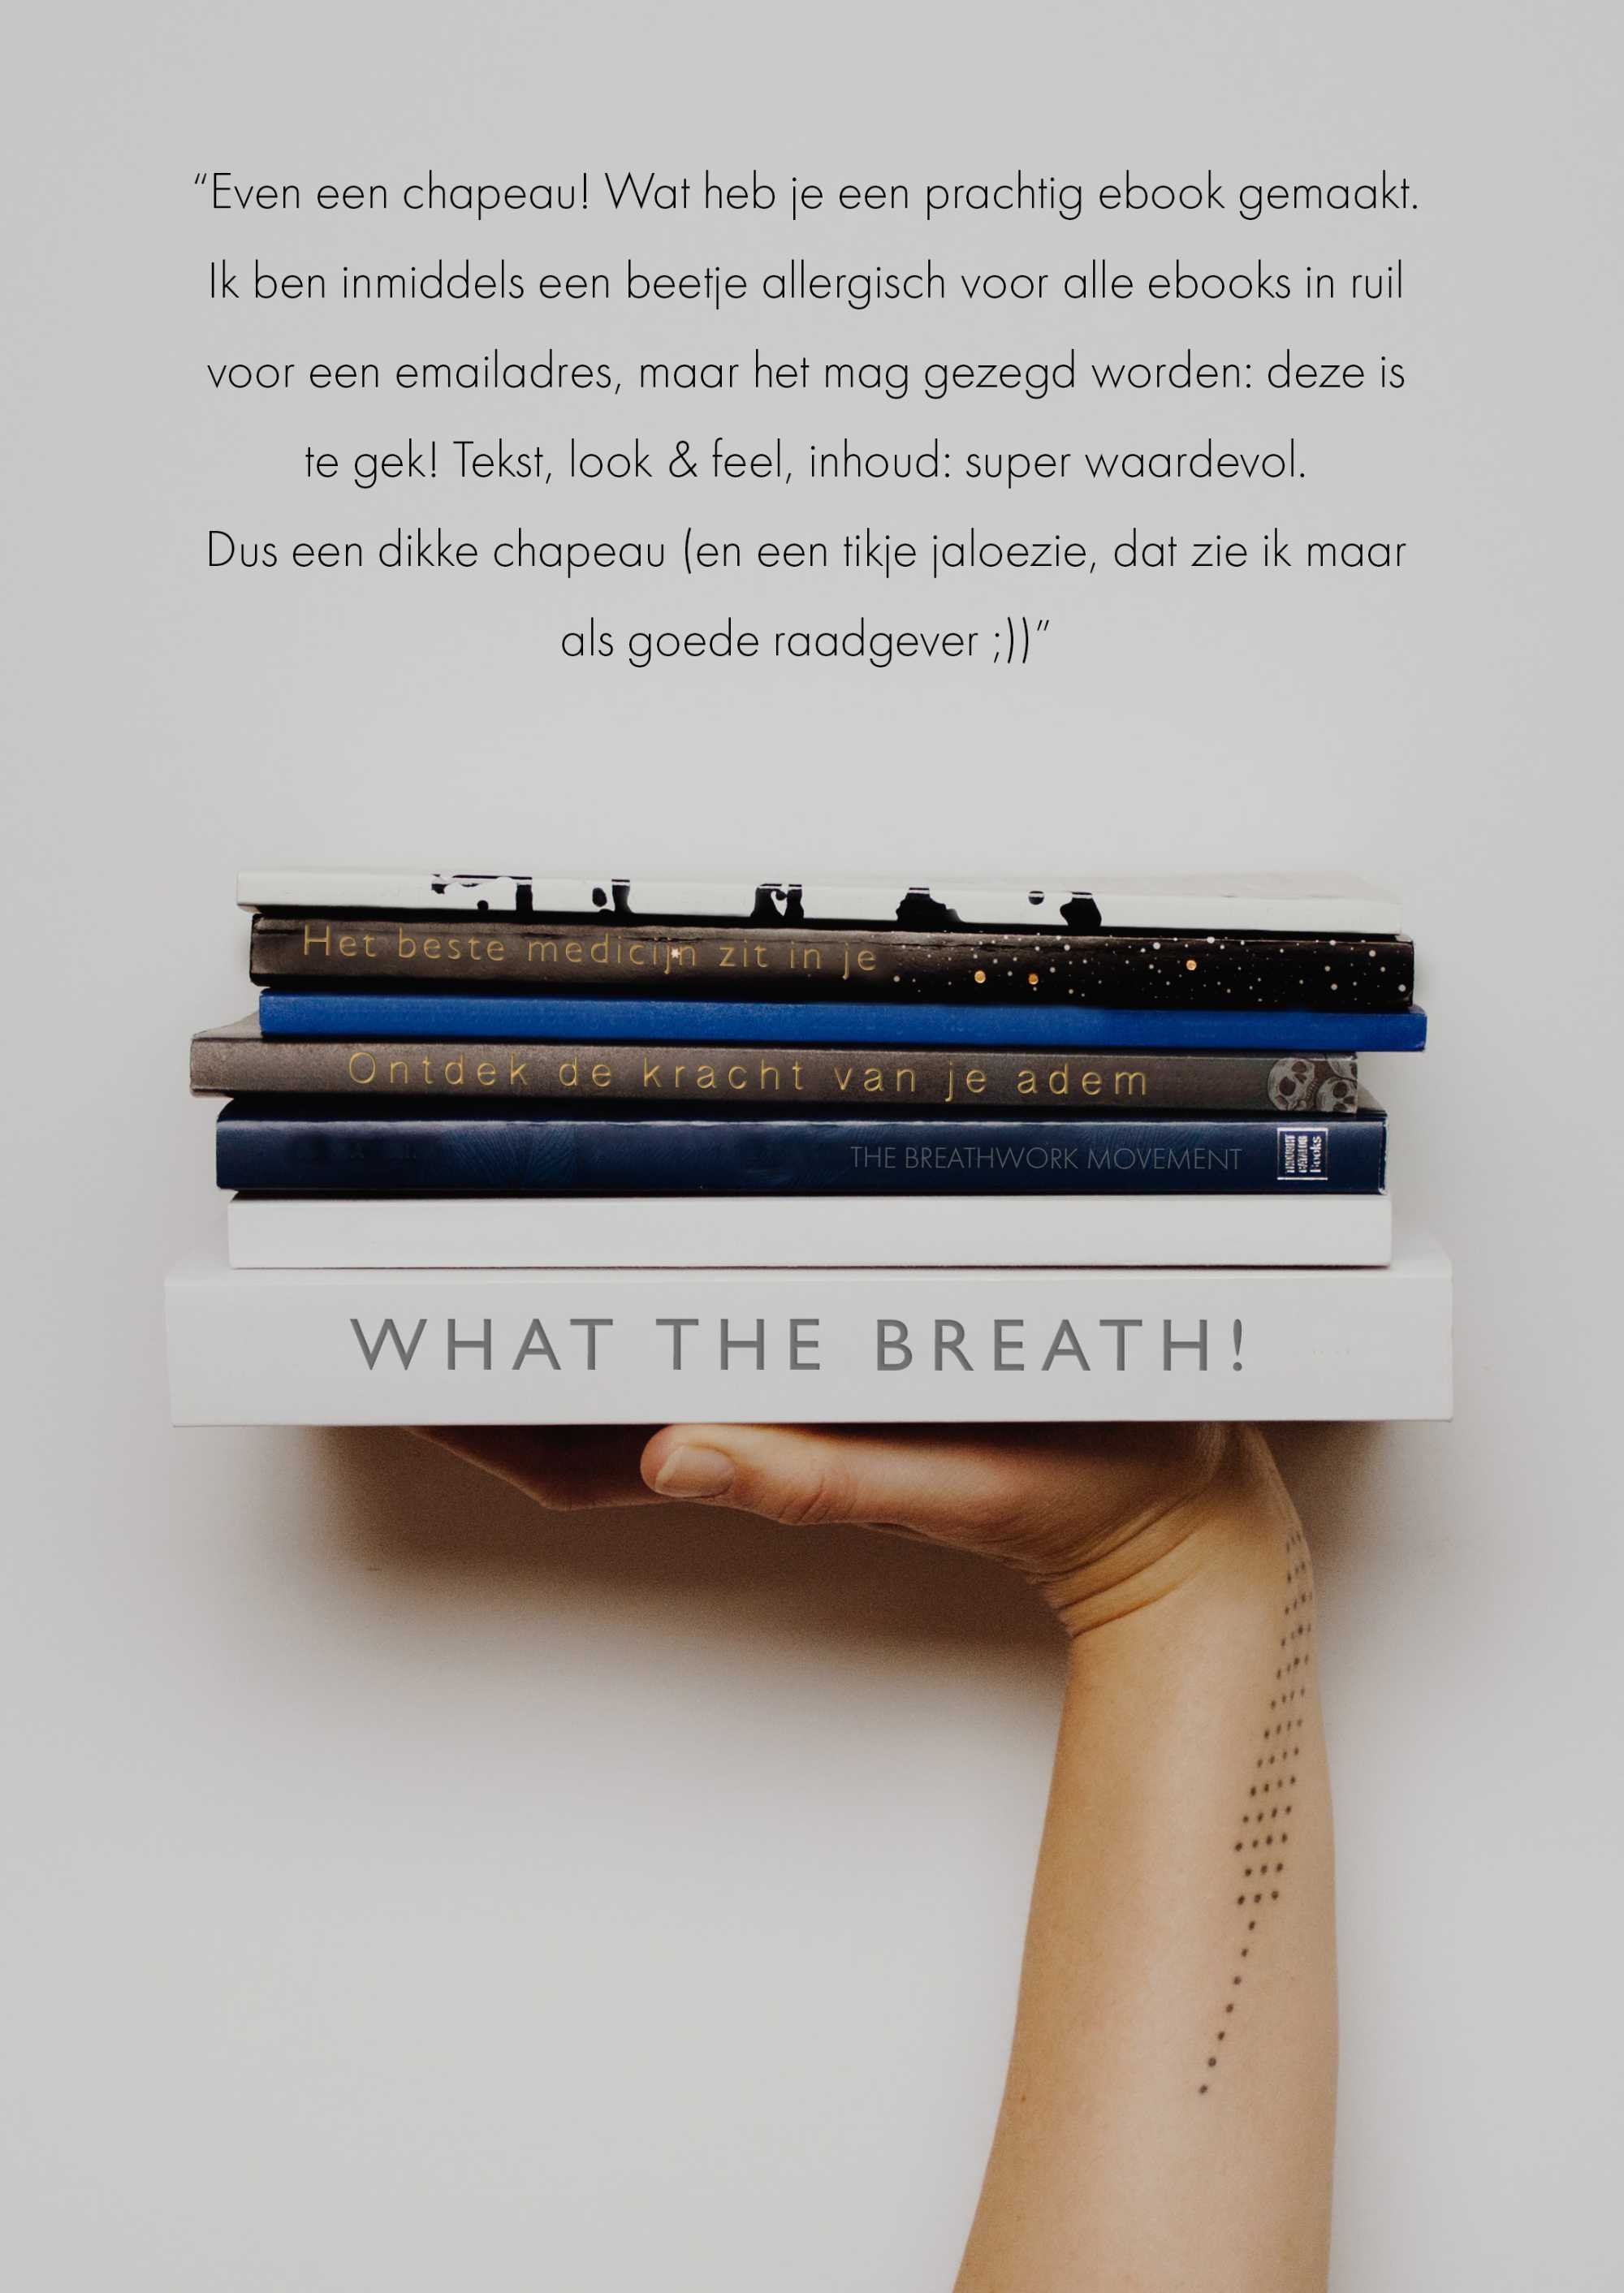 What the Breath: Ontdek de kracht van de adem